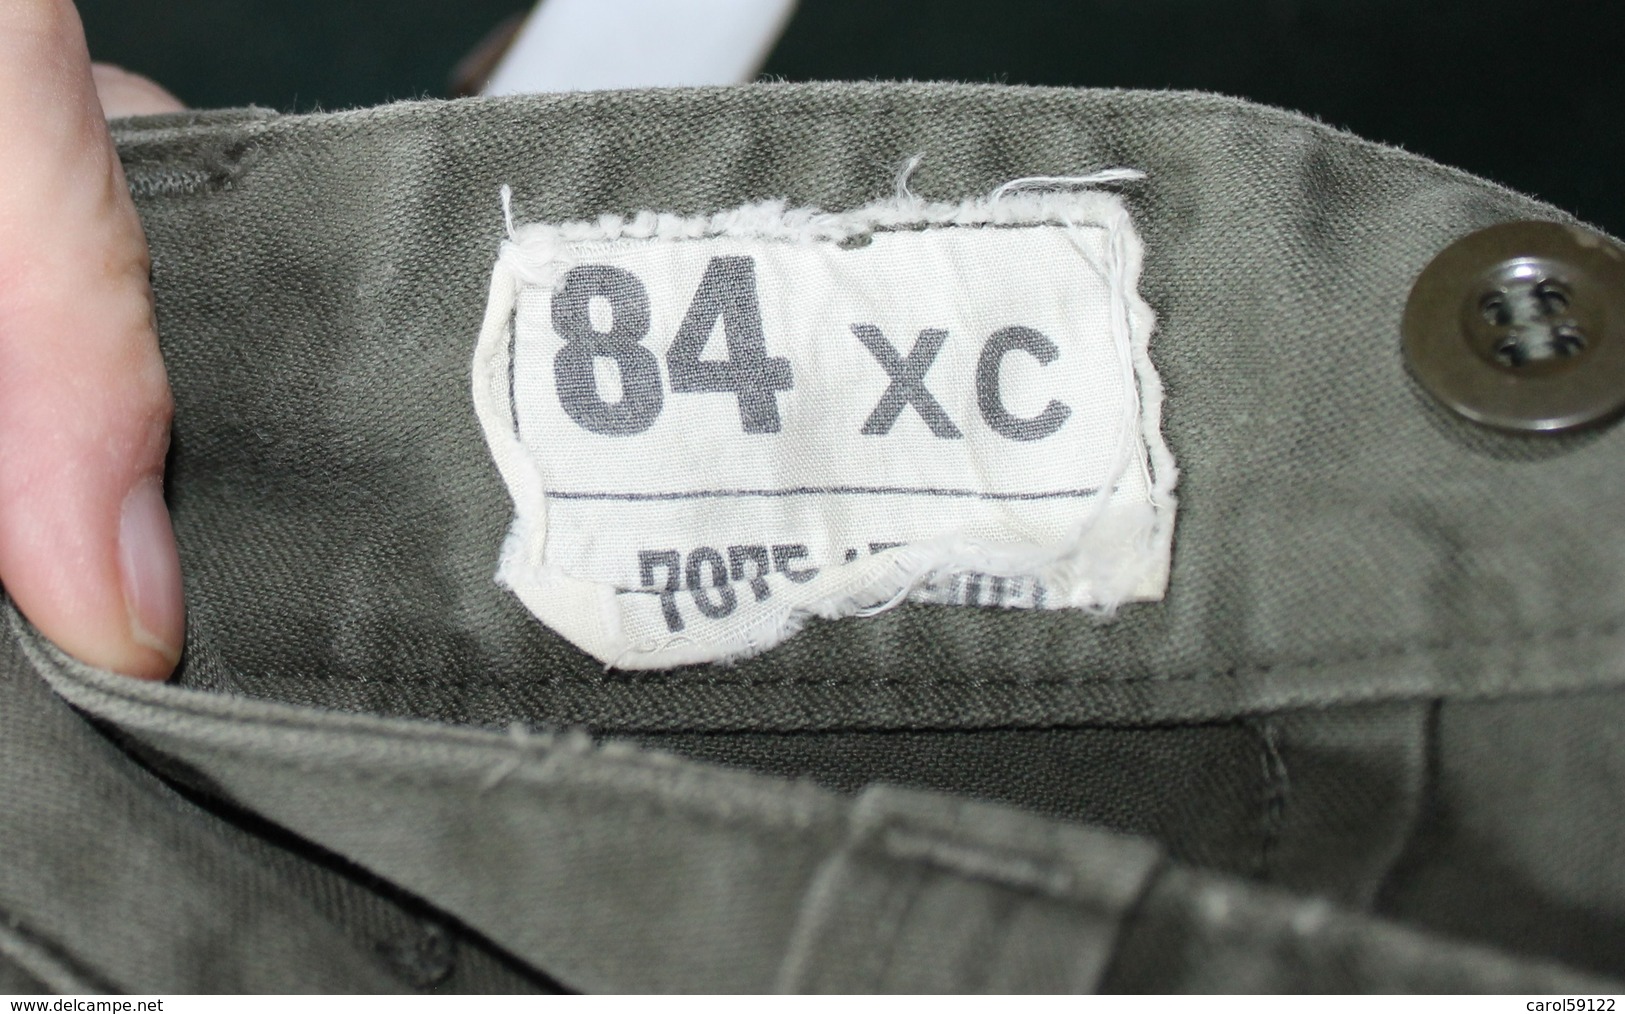 Pantalon Treillis Toile Verte T 84C - Uniformen